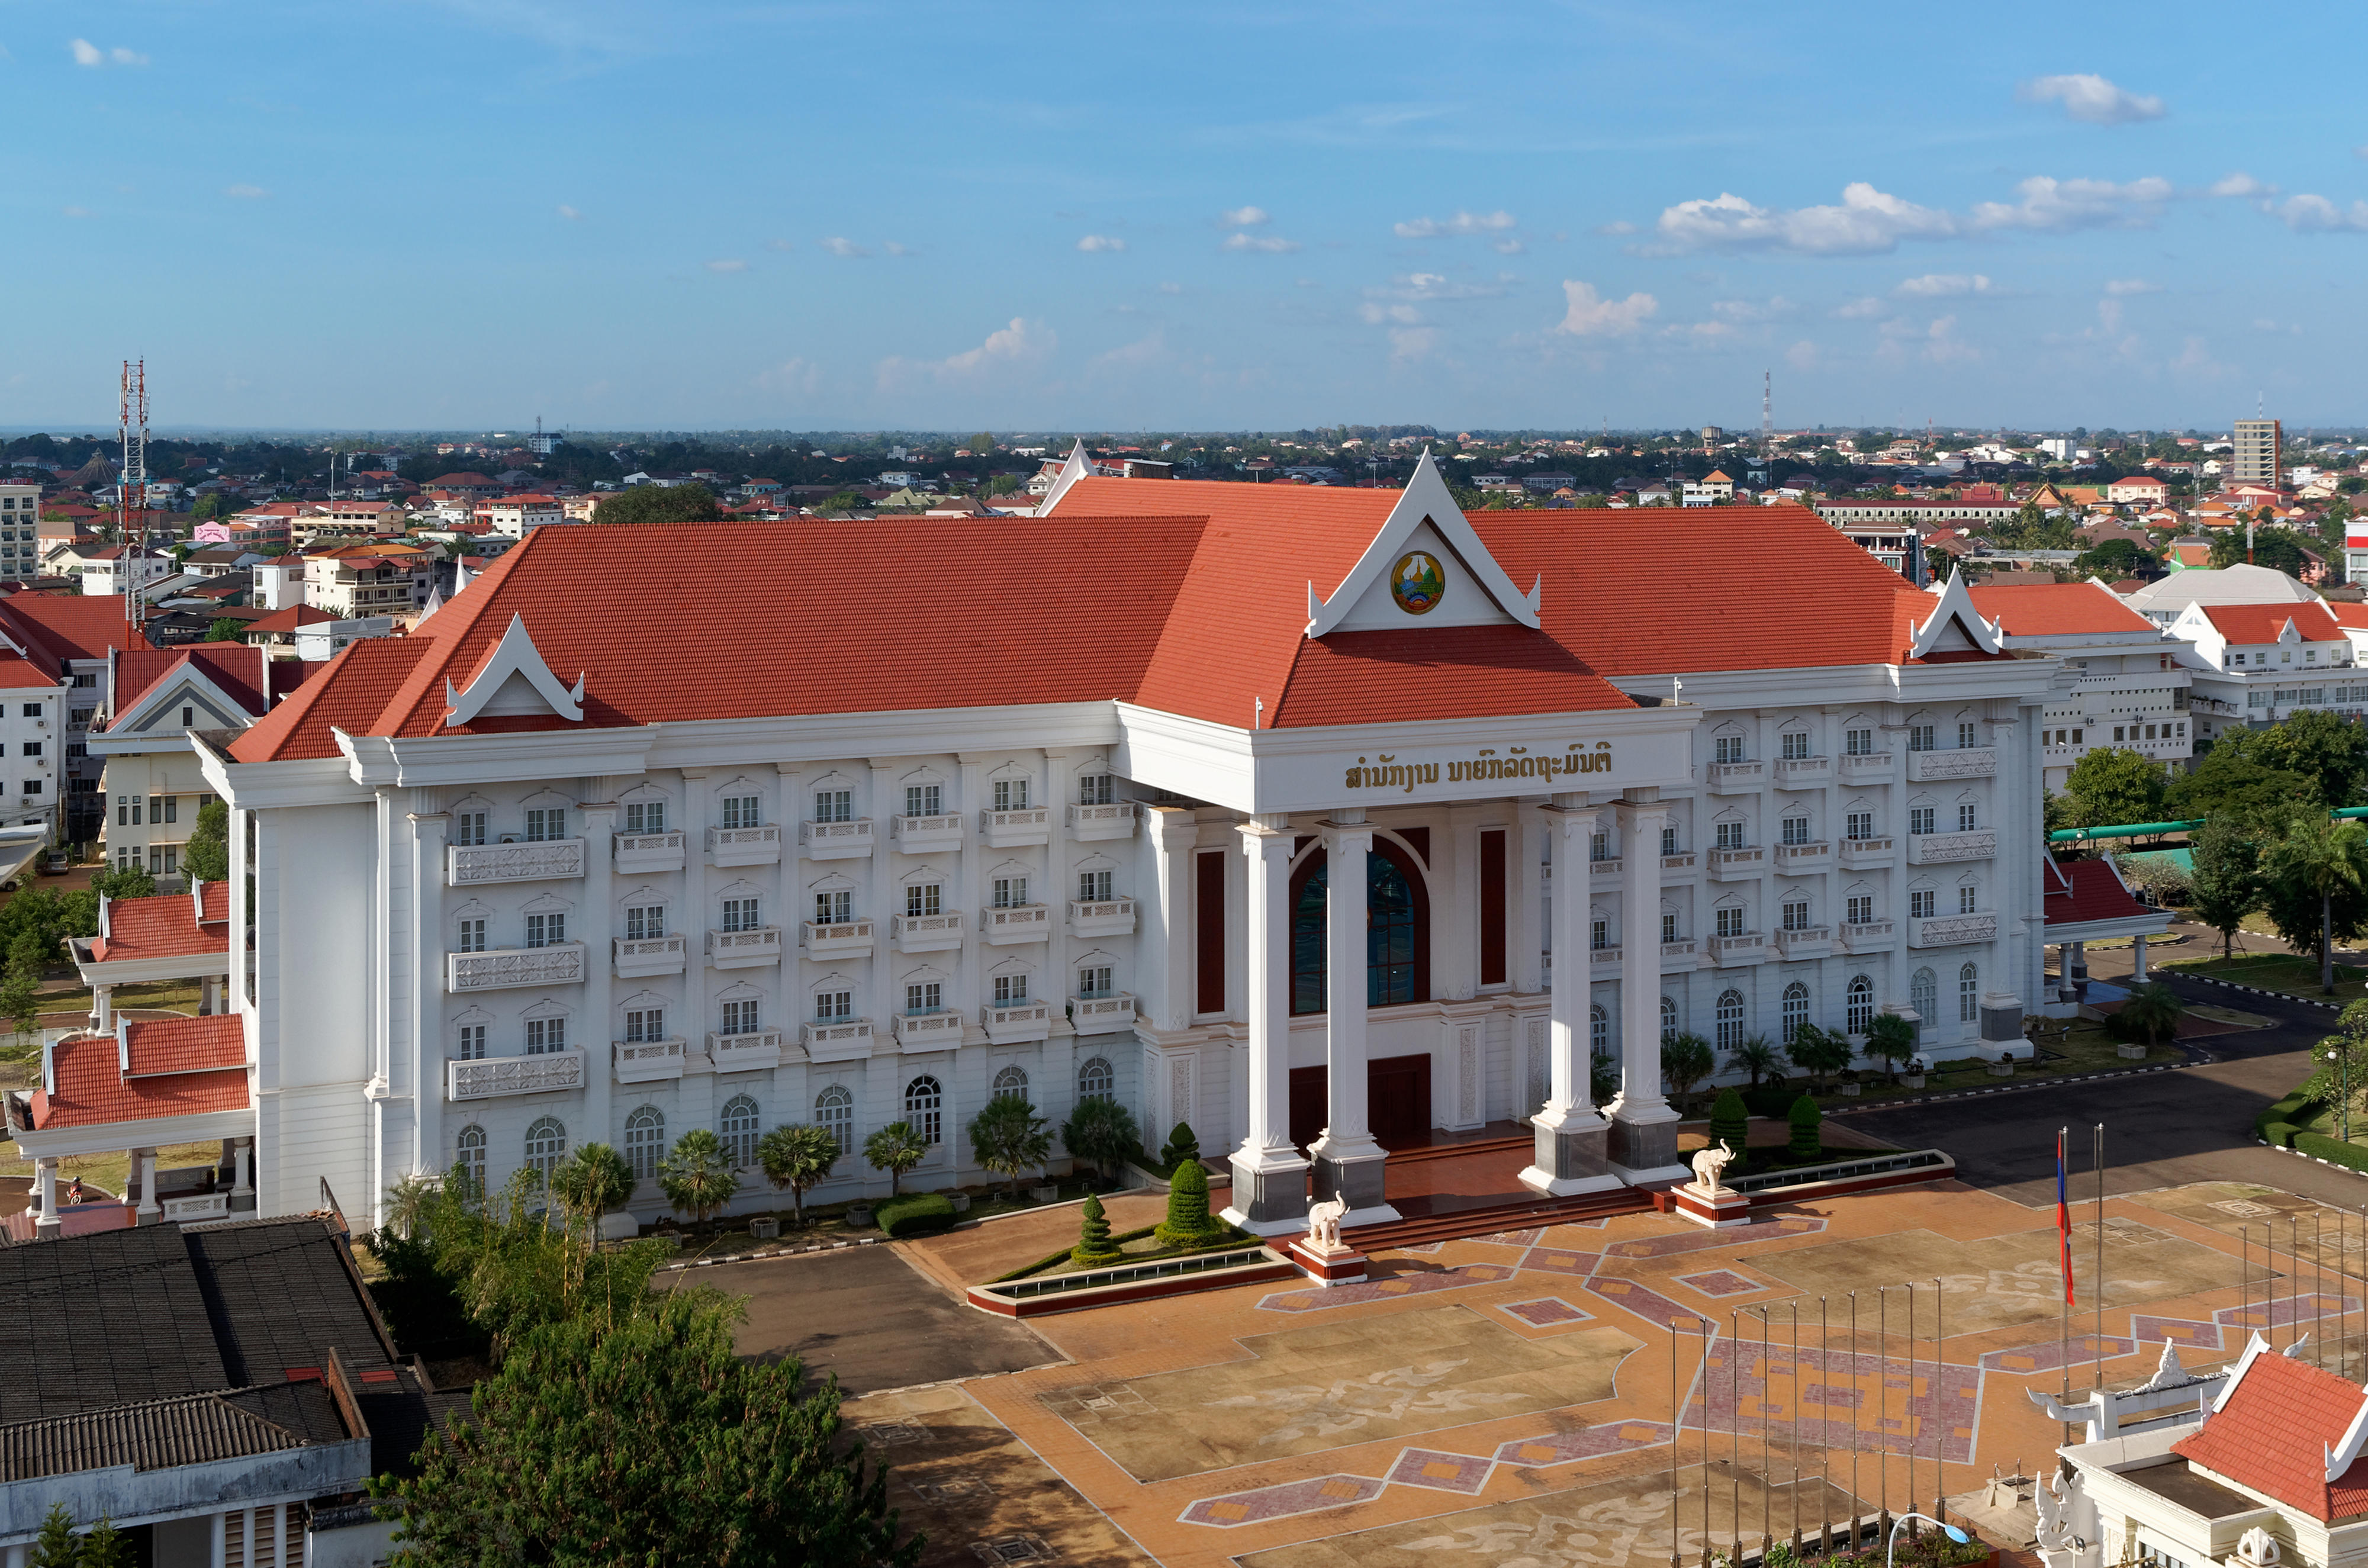 Regierungsgebäude in Vientiane, der Hauptstadt von Laos